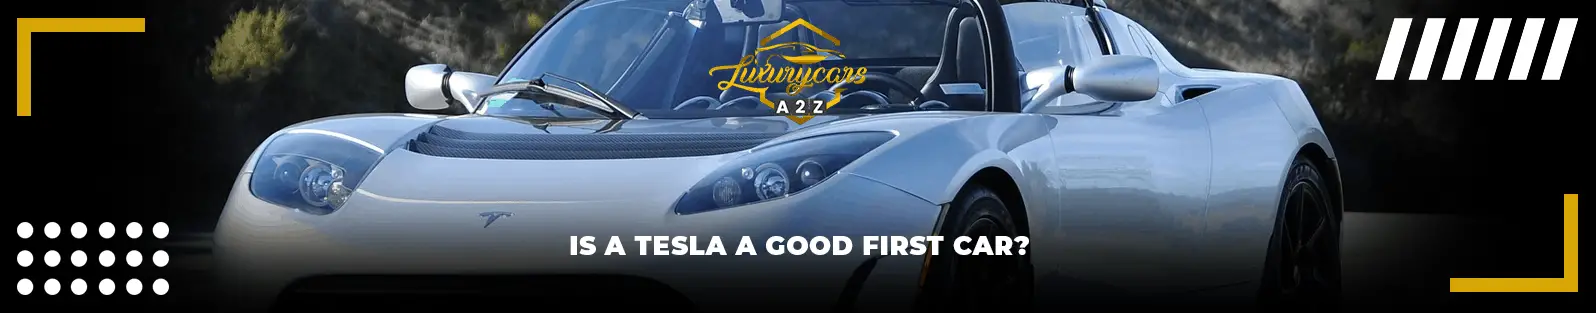 Une Tesla est-elle une bonne première voiture ?